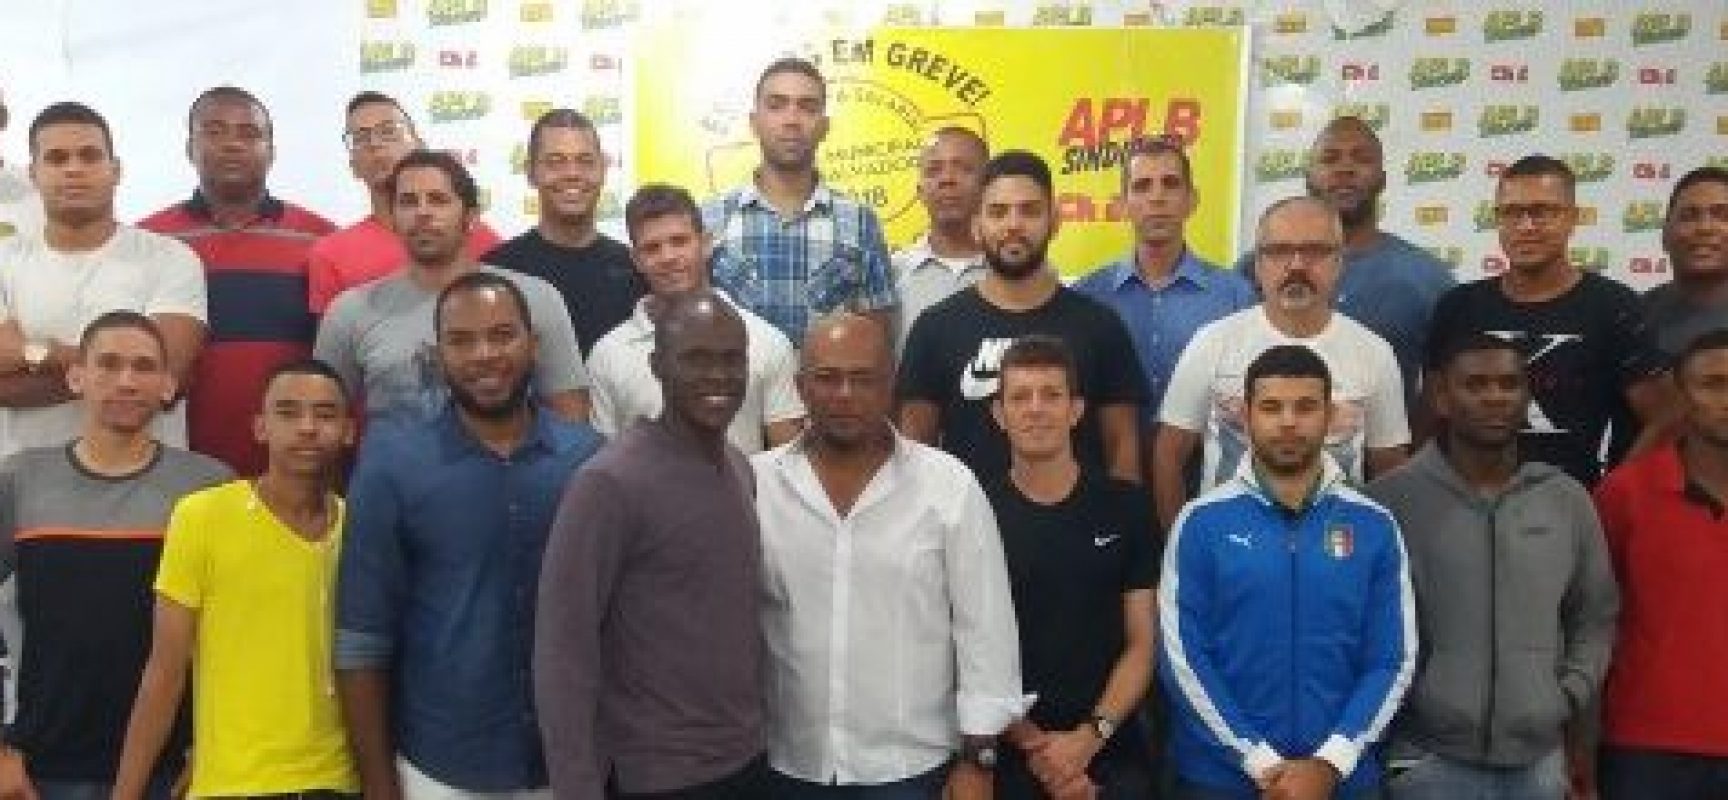 Com apoio da FBF, Associação de Árbitros realiza curso em Salvador